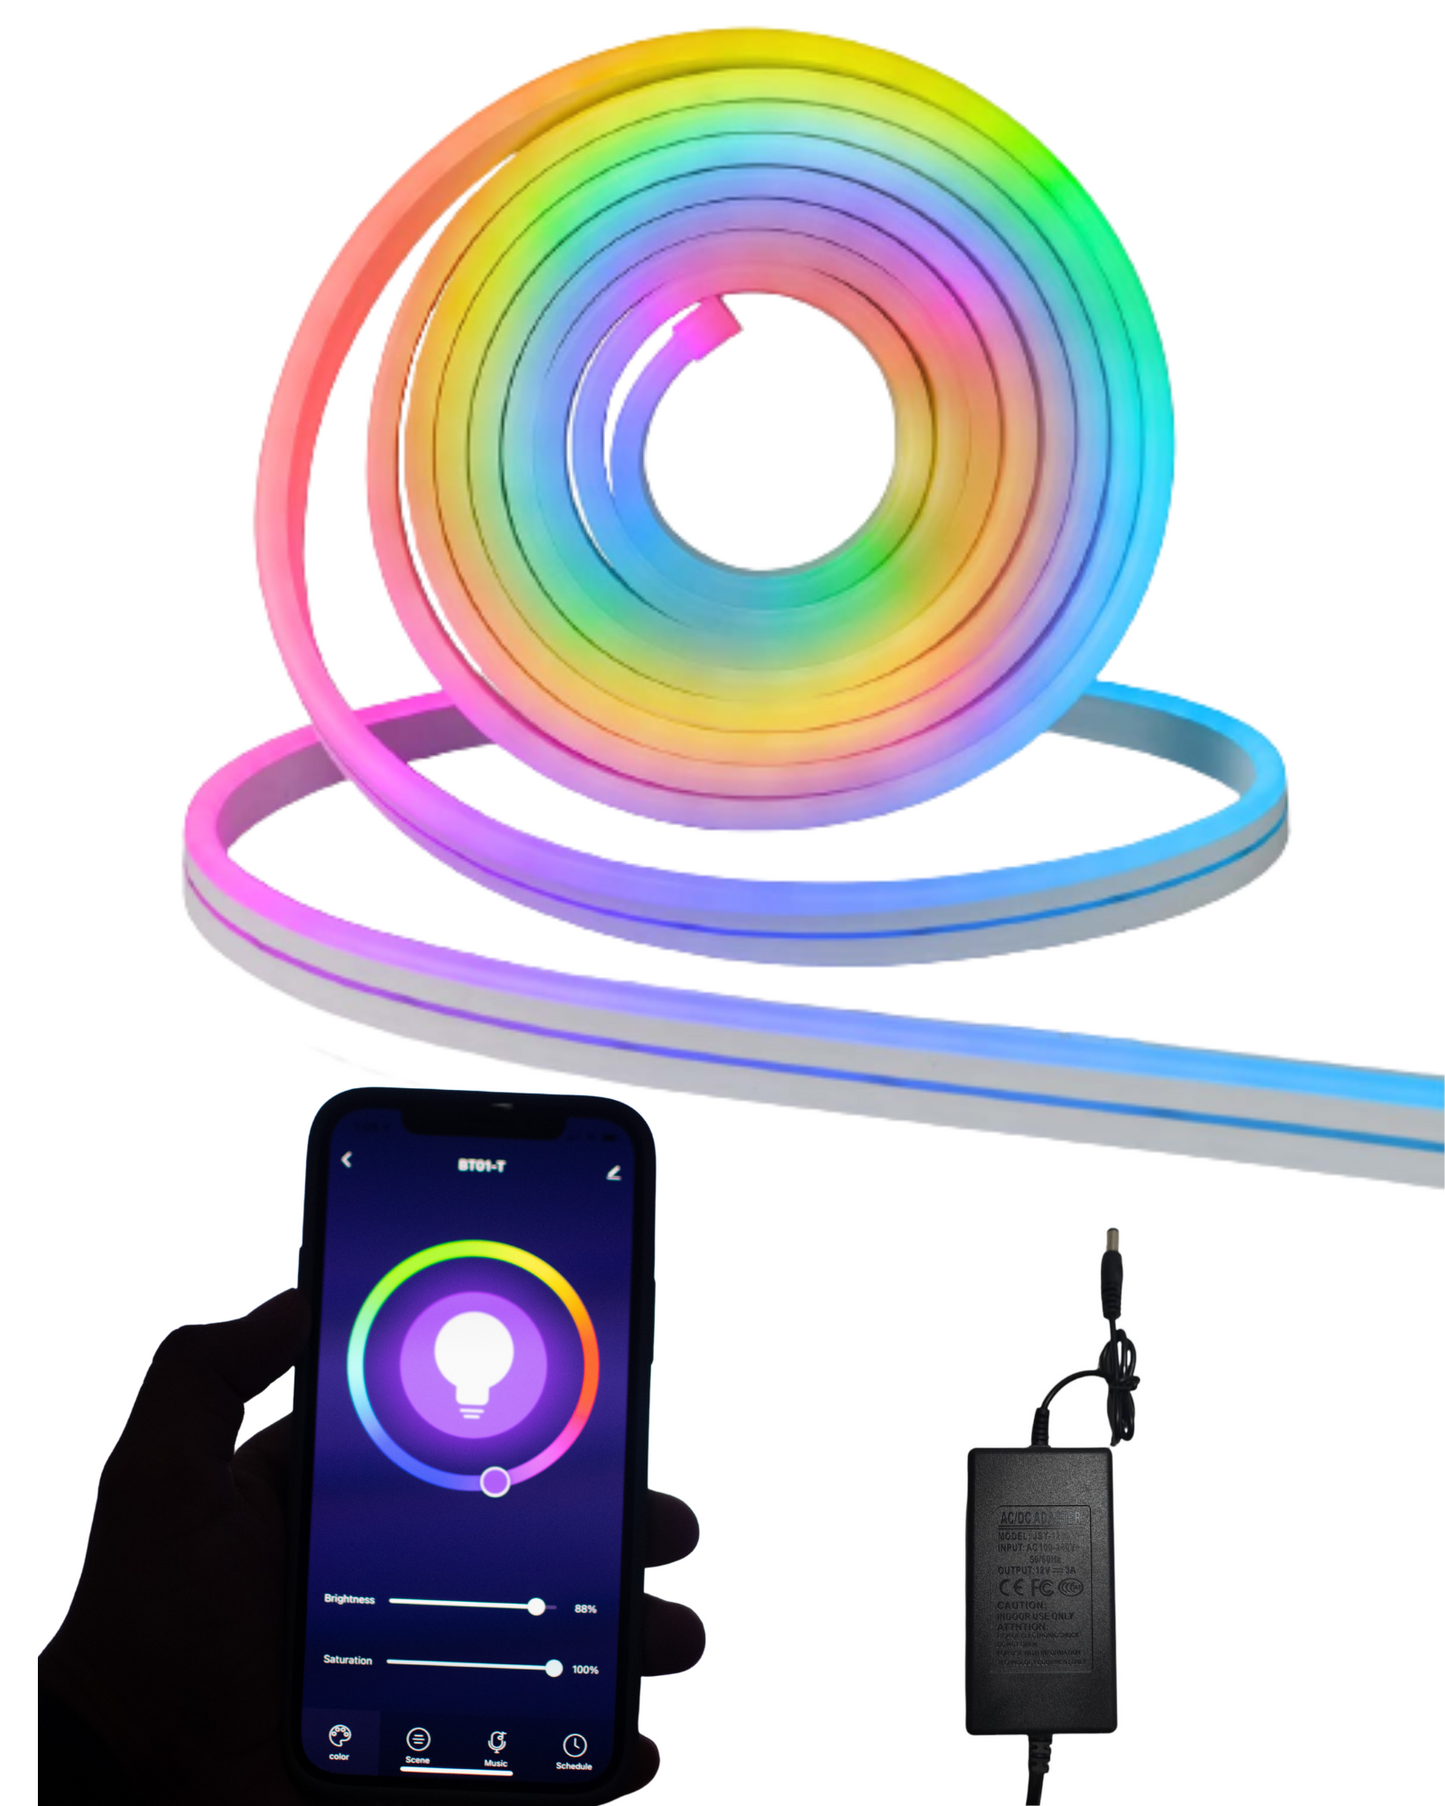 Manguera LED Neonflex RGB mágica | Tira 5 metros RGB diferentes cambios de colores